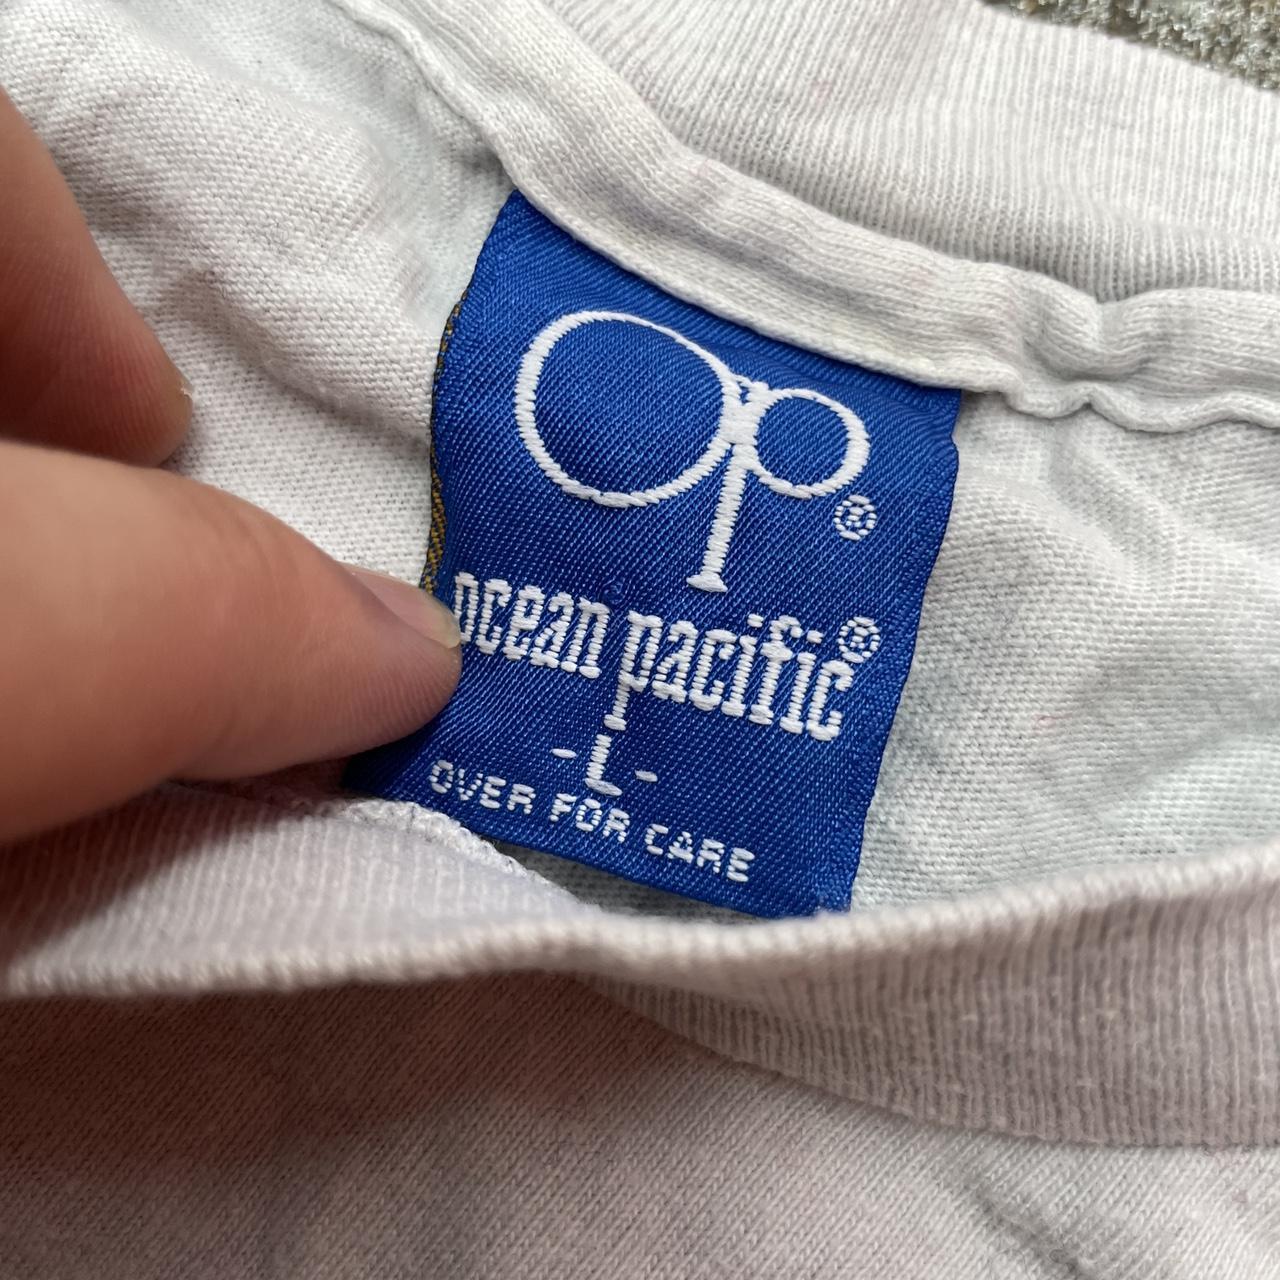 Ocean Pacific Men's Grey T-shirt (4)